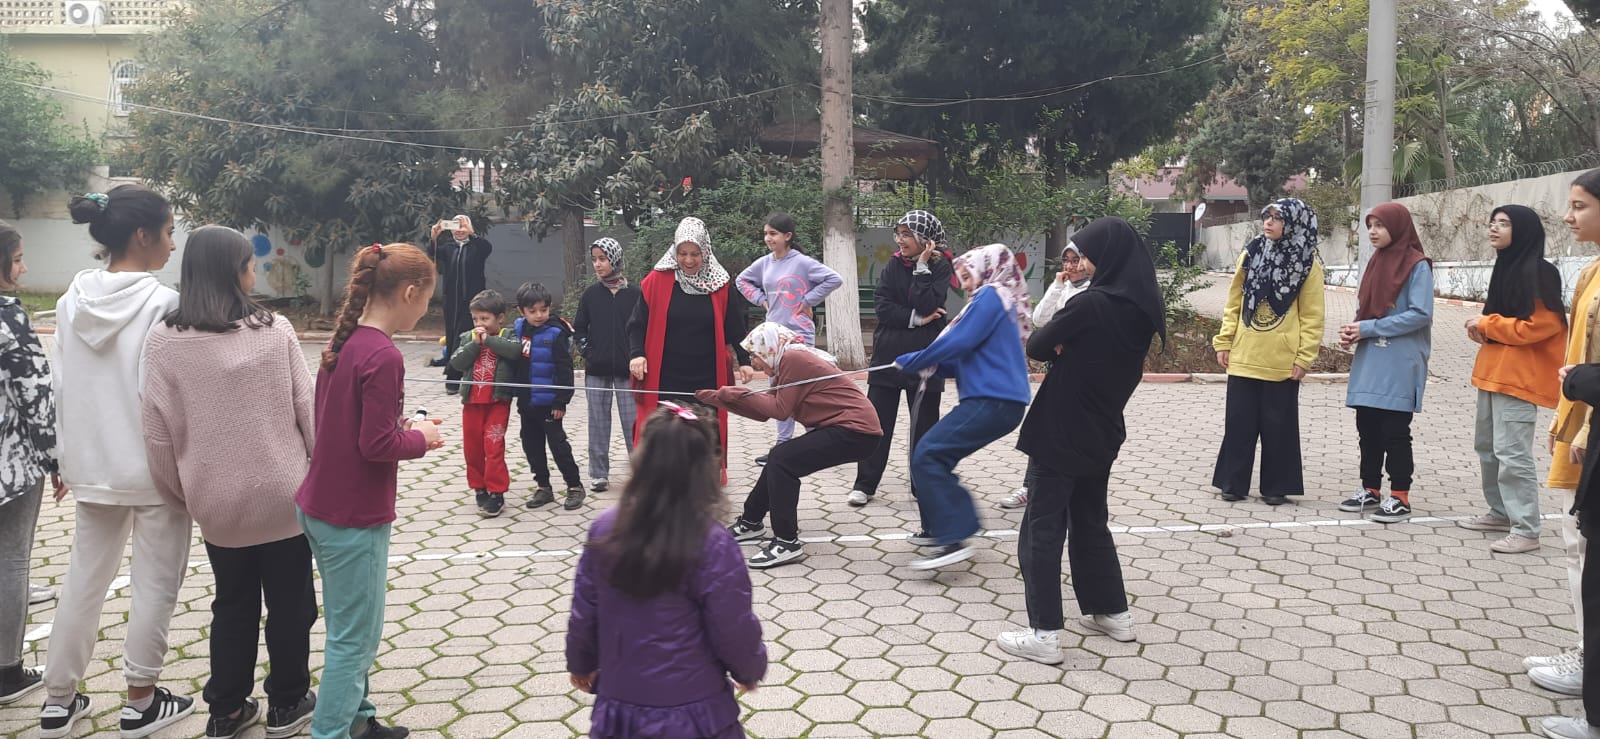 Adanada Gençliğe Değer Ara Dönem Kampı sona erdi15 (Orta)2